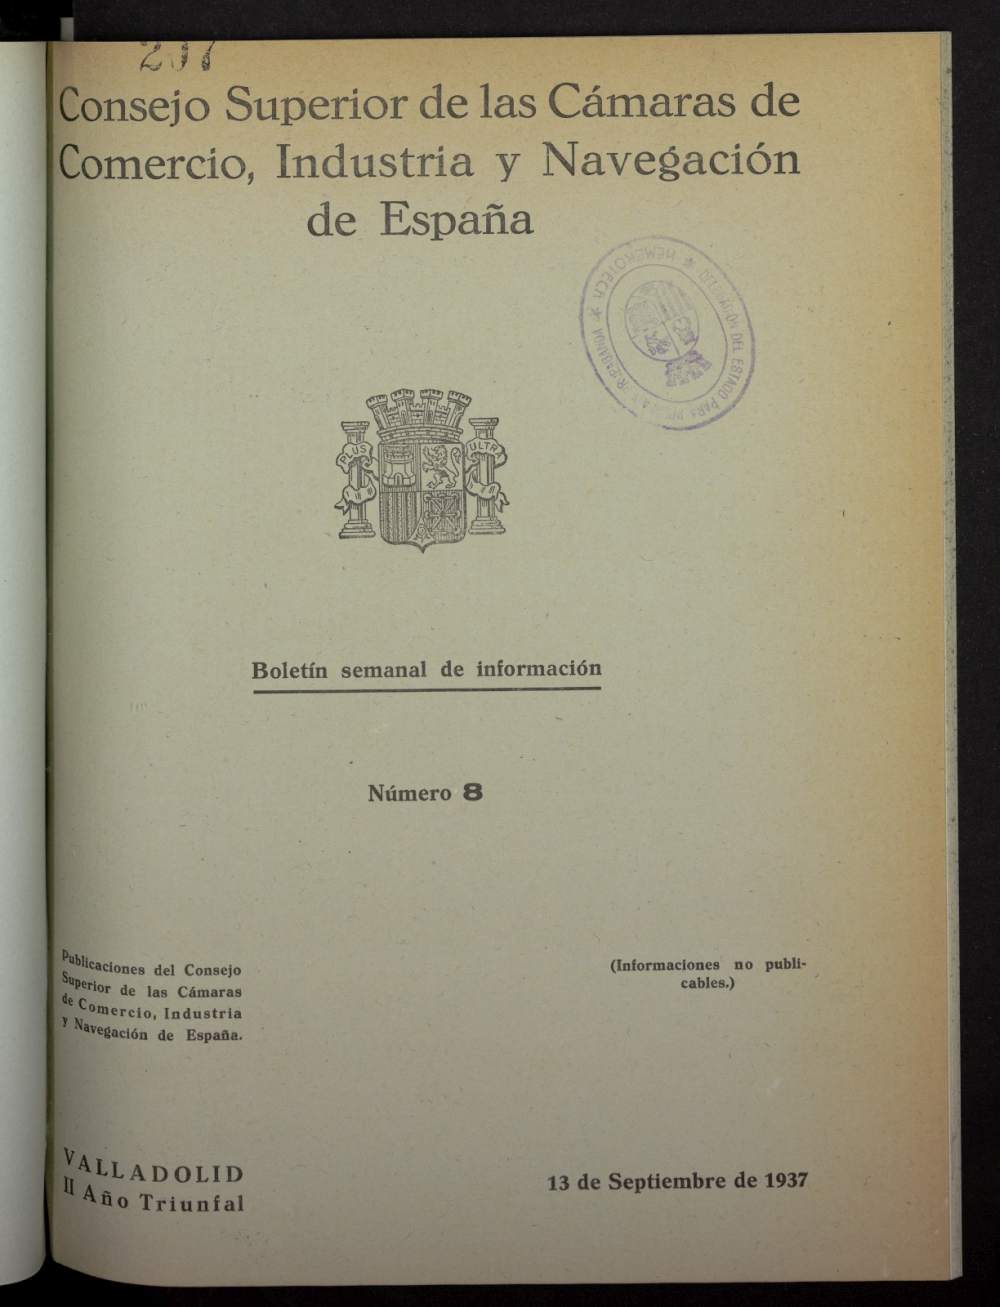 Boletín Semanal de Información. Consejo Superior de las Cámaras de Comercio de España del 13 de septiembre de 1937, nº 8